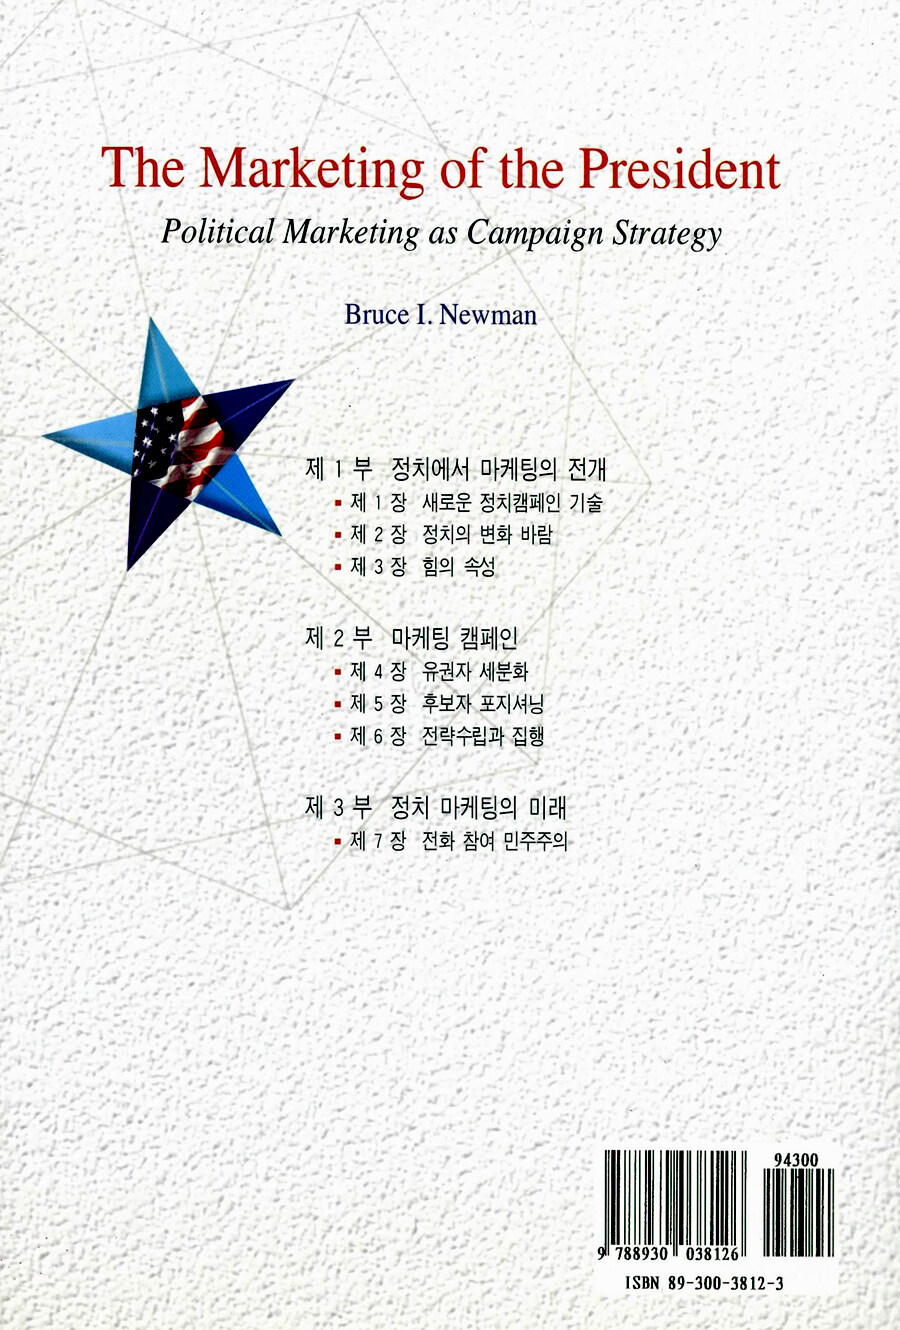 대통령 선거 마케팅 : 클린턴의 캠페인 전략과 정치 마케팅